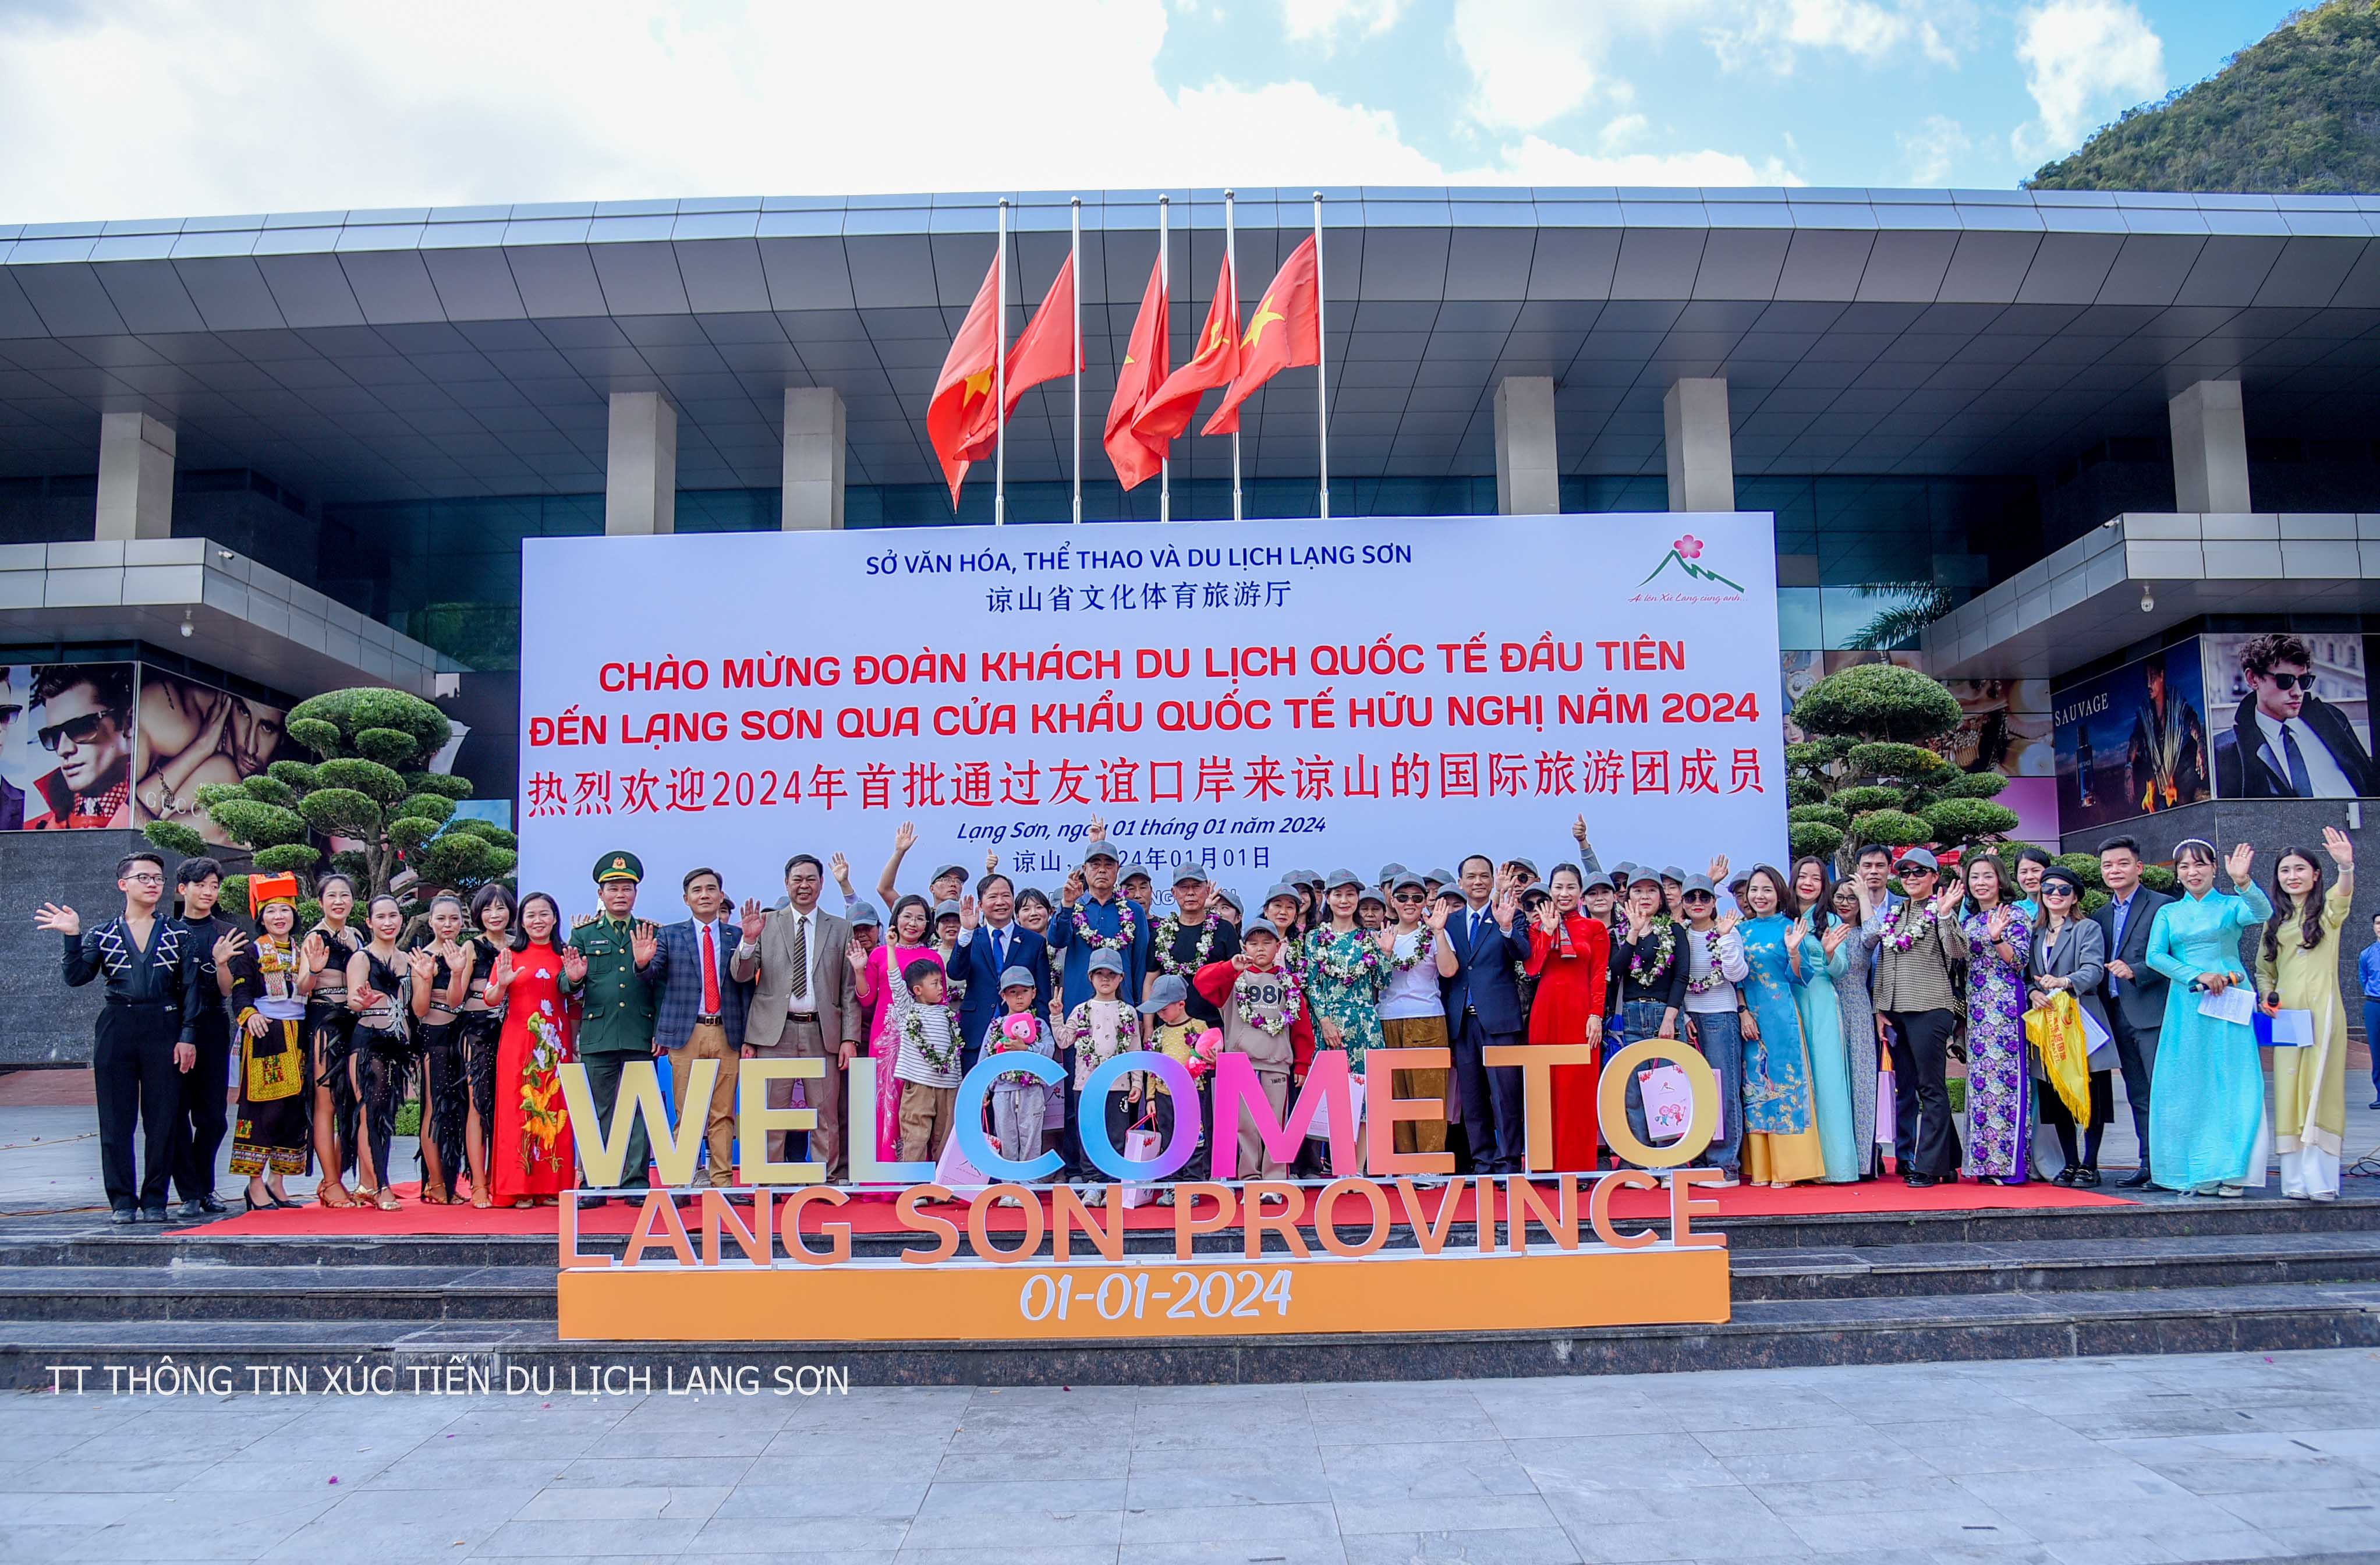 Du lịch Lạng Sơn chào đón đoàn khách du lịch quốc tế đầu tiên qua Cửa khẩu Quốc tế Hữu Nghị